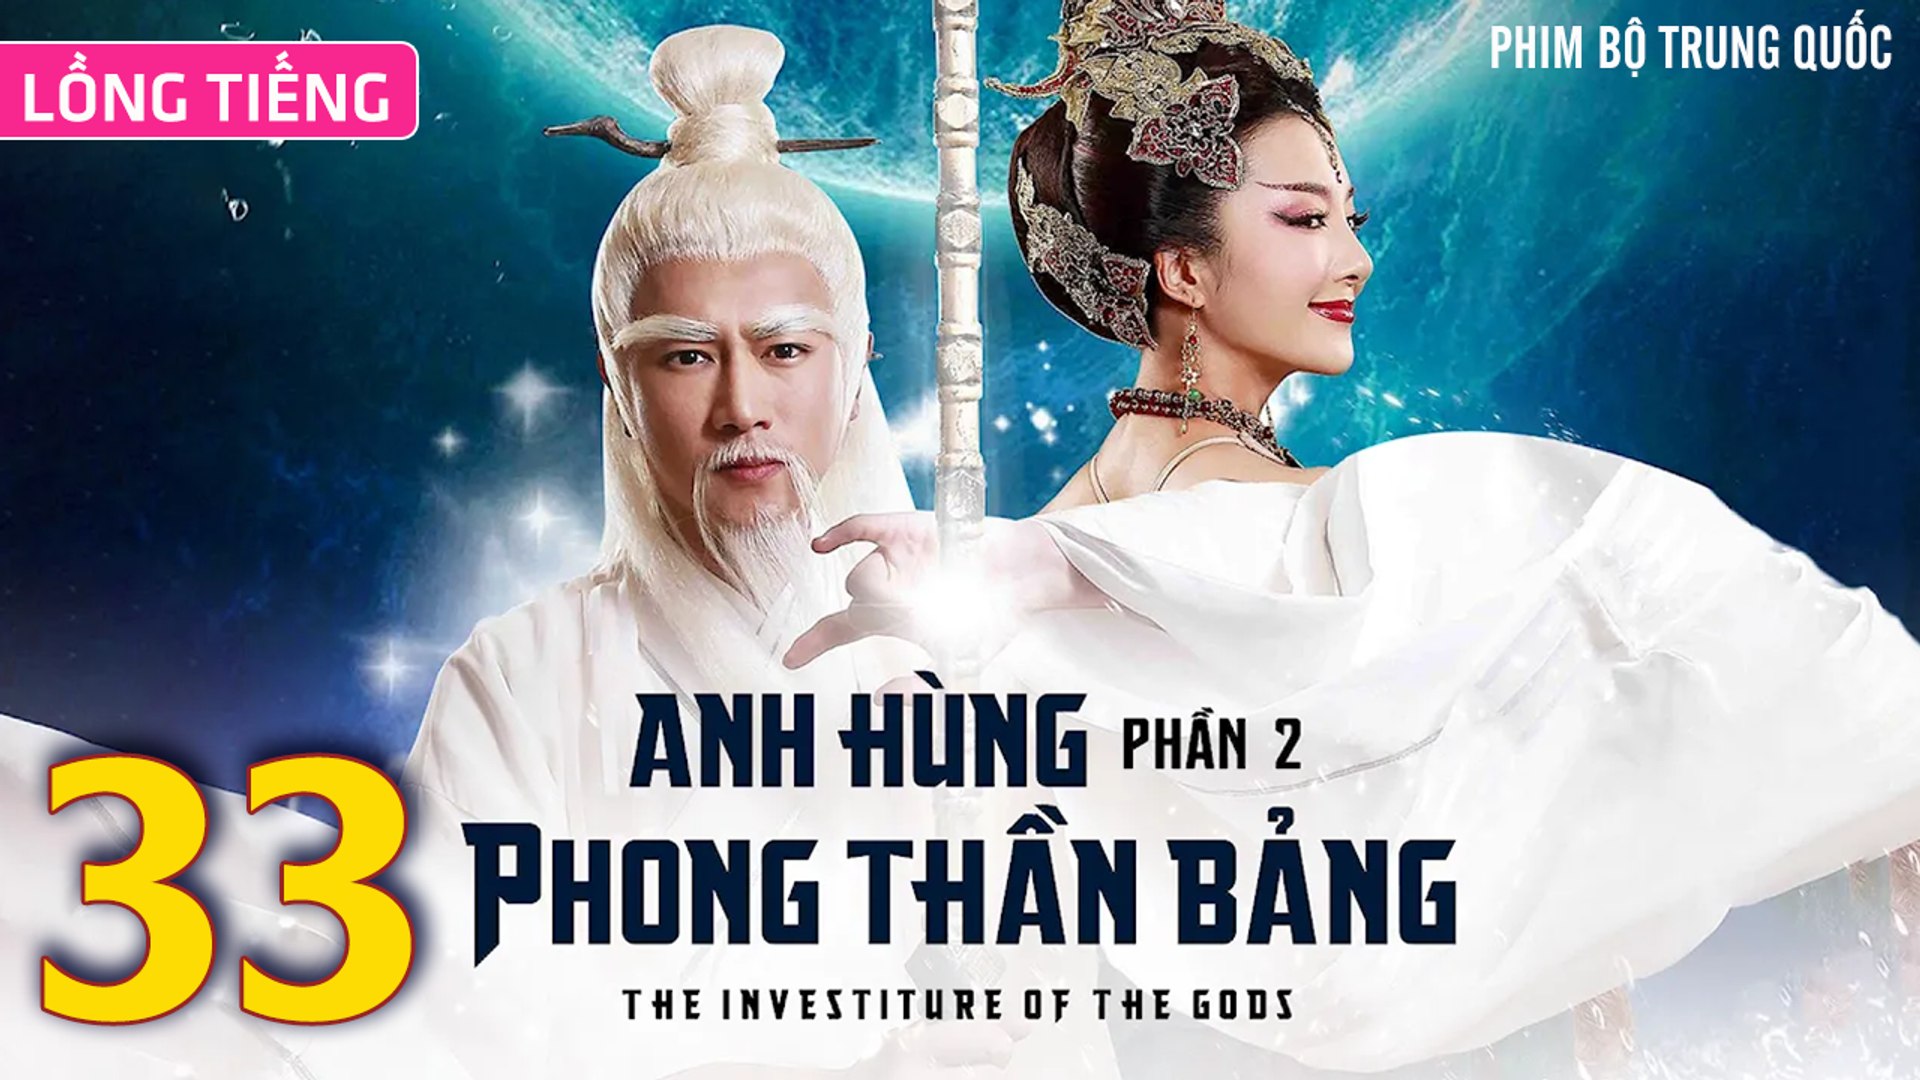 ⁣Phim Bộ Hay: ANH HÙNG PHONG THẦN BẢNG 2 - Tập 33 (Lồng Tiếng) | Phim Bộ Trung Quốc Hay Nhất 2023